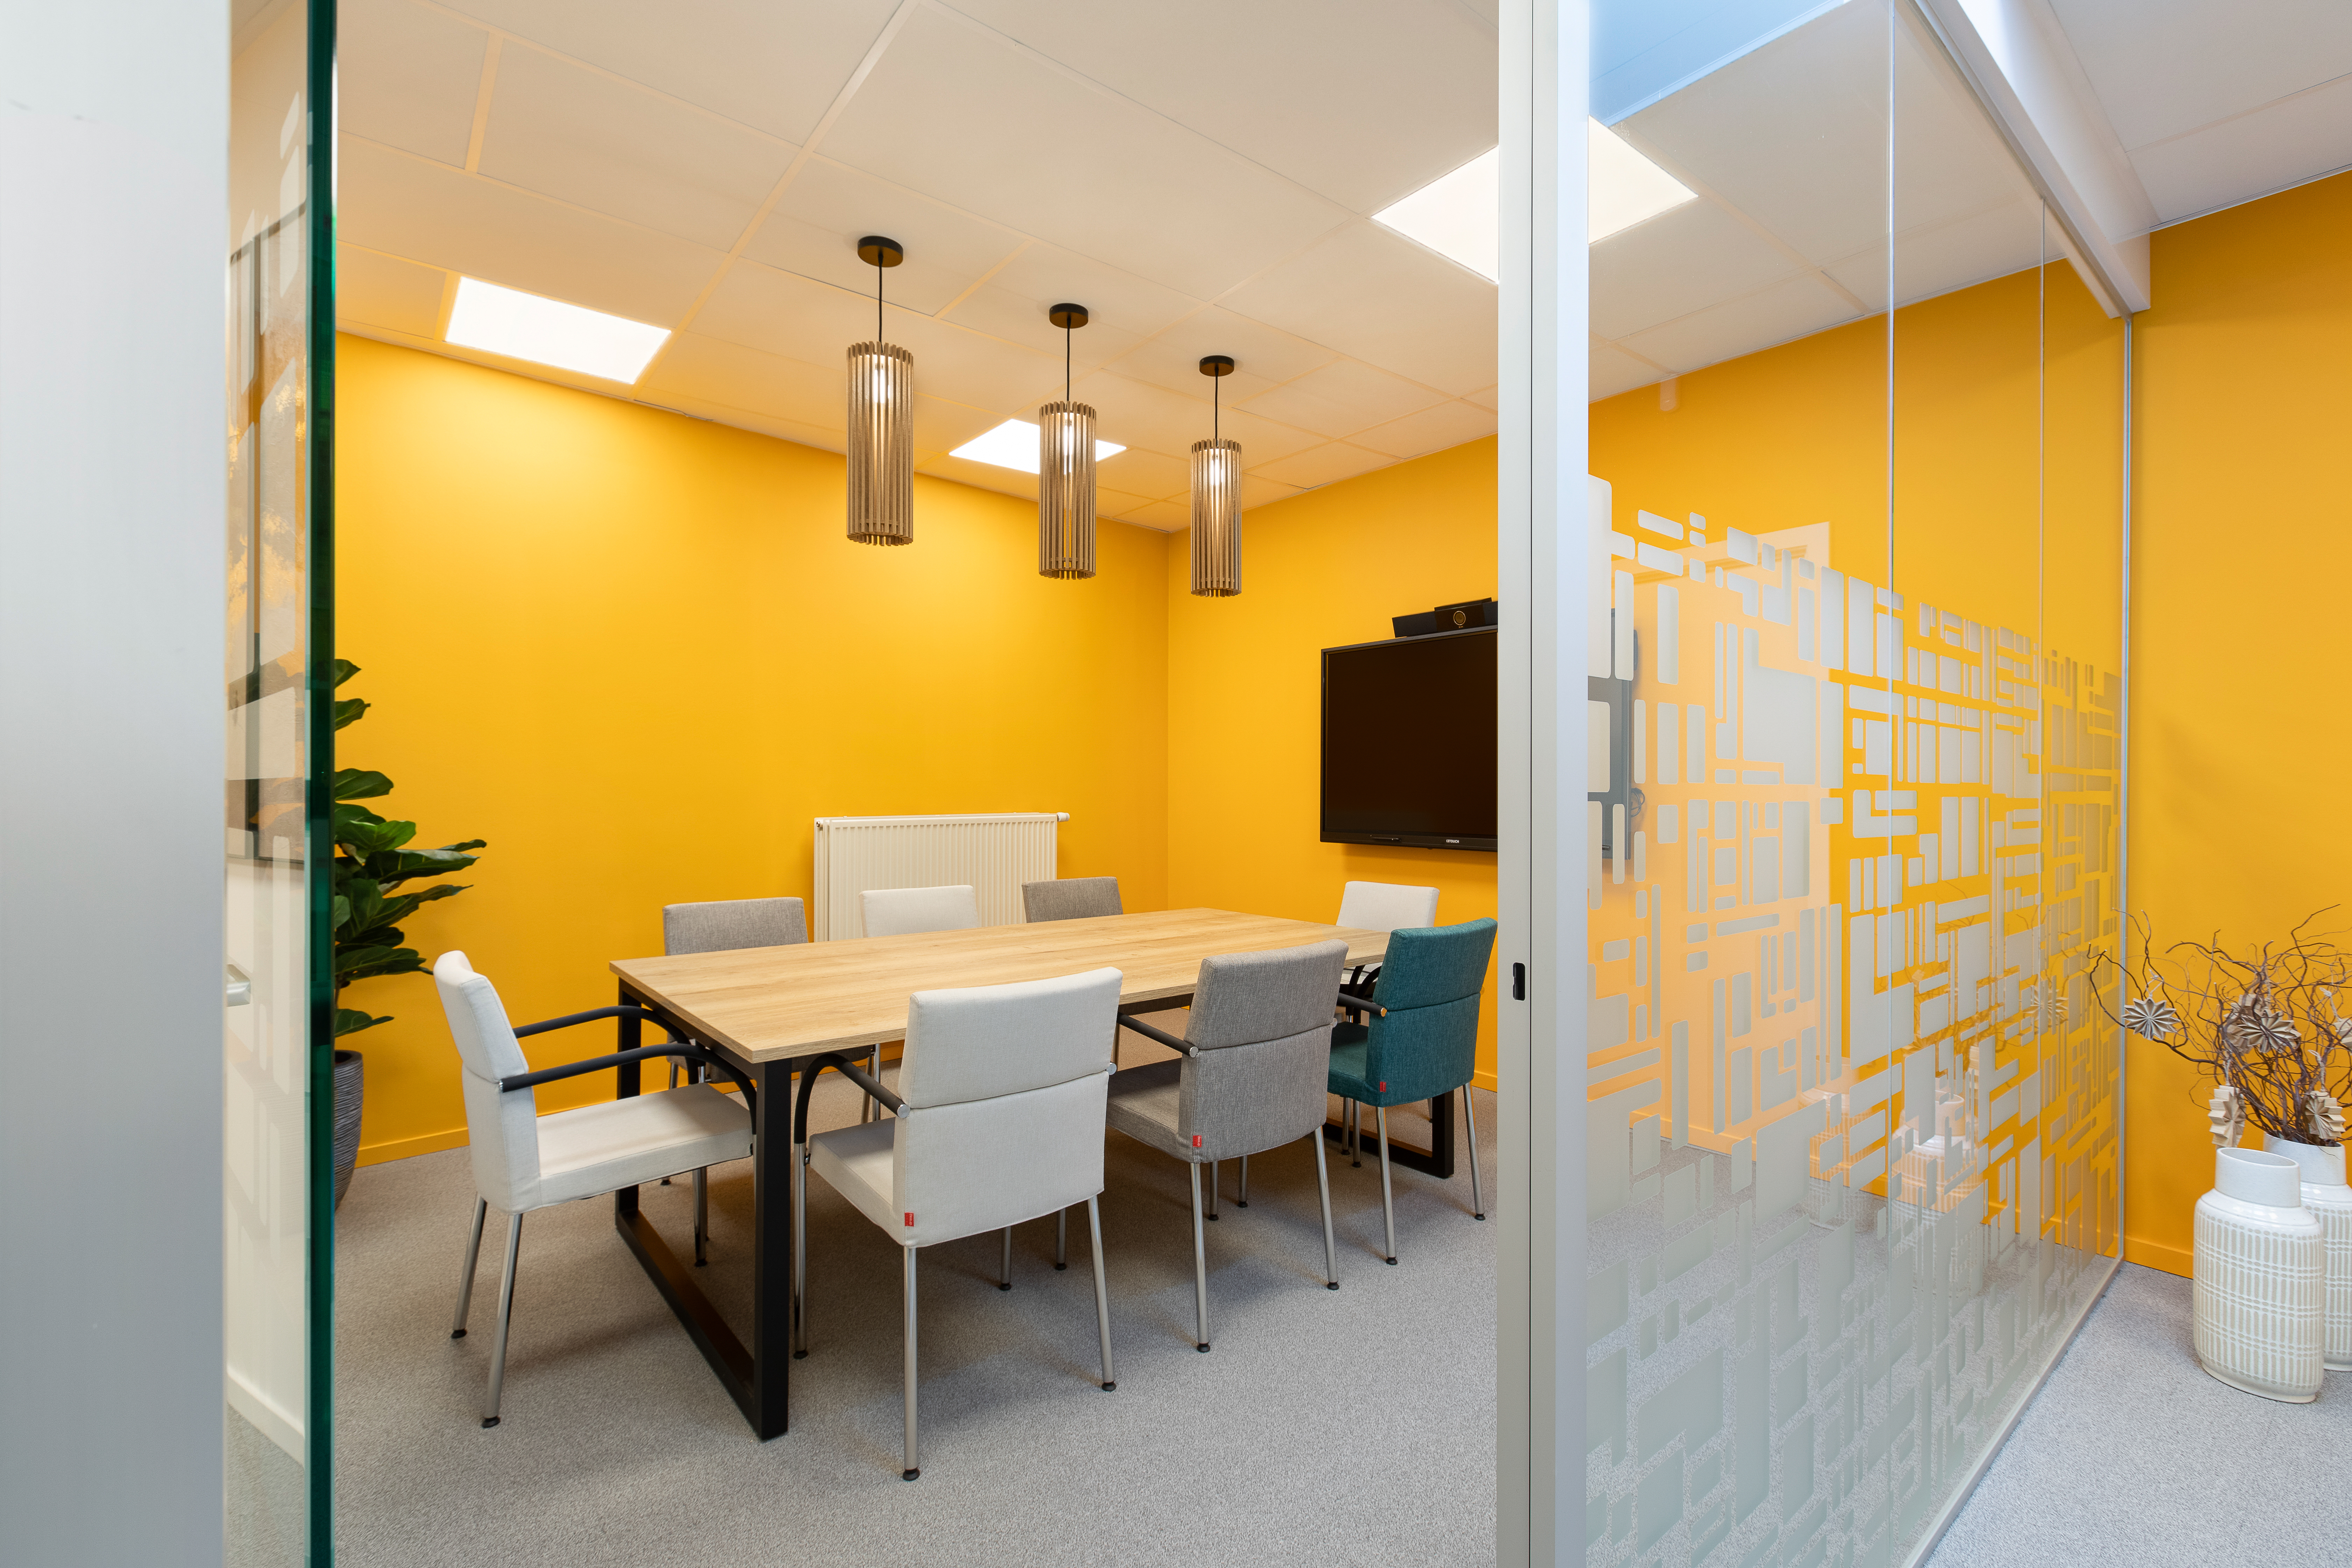 vergaderruimte met gele accentmuur, neutrale vergaderstoelen en vilten sfeerverlichting